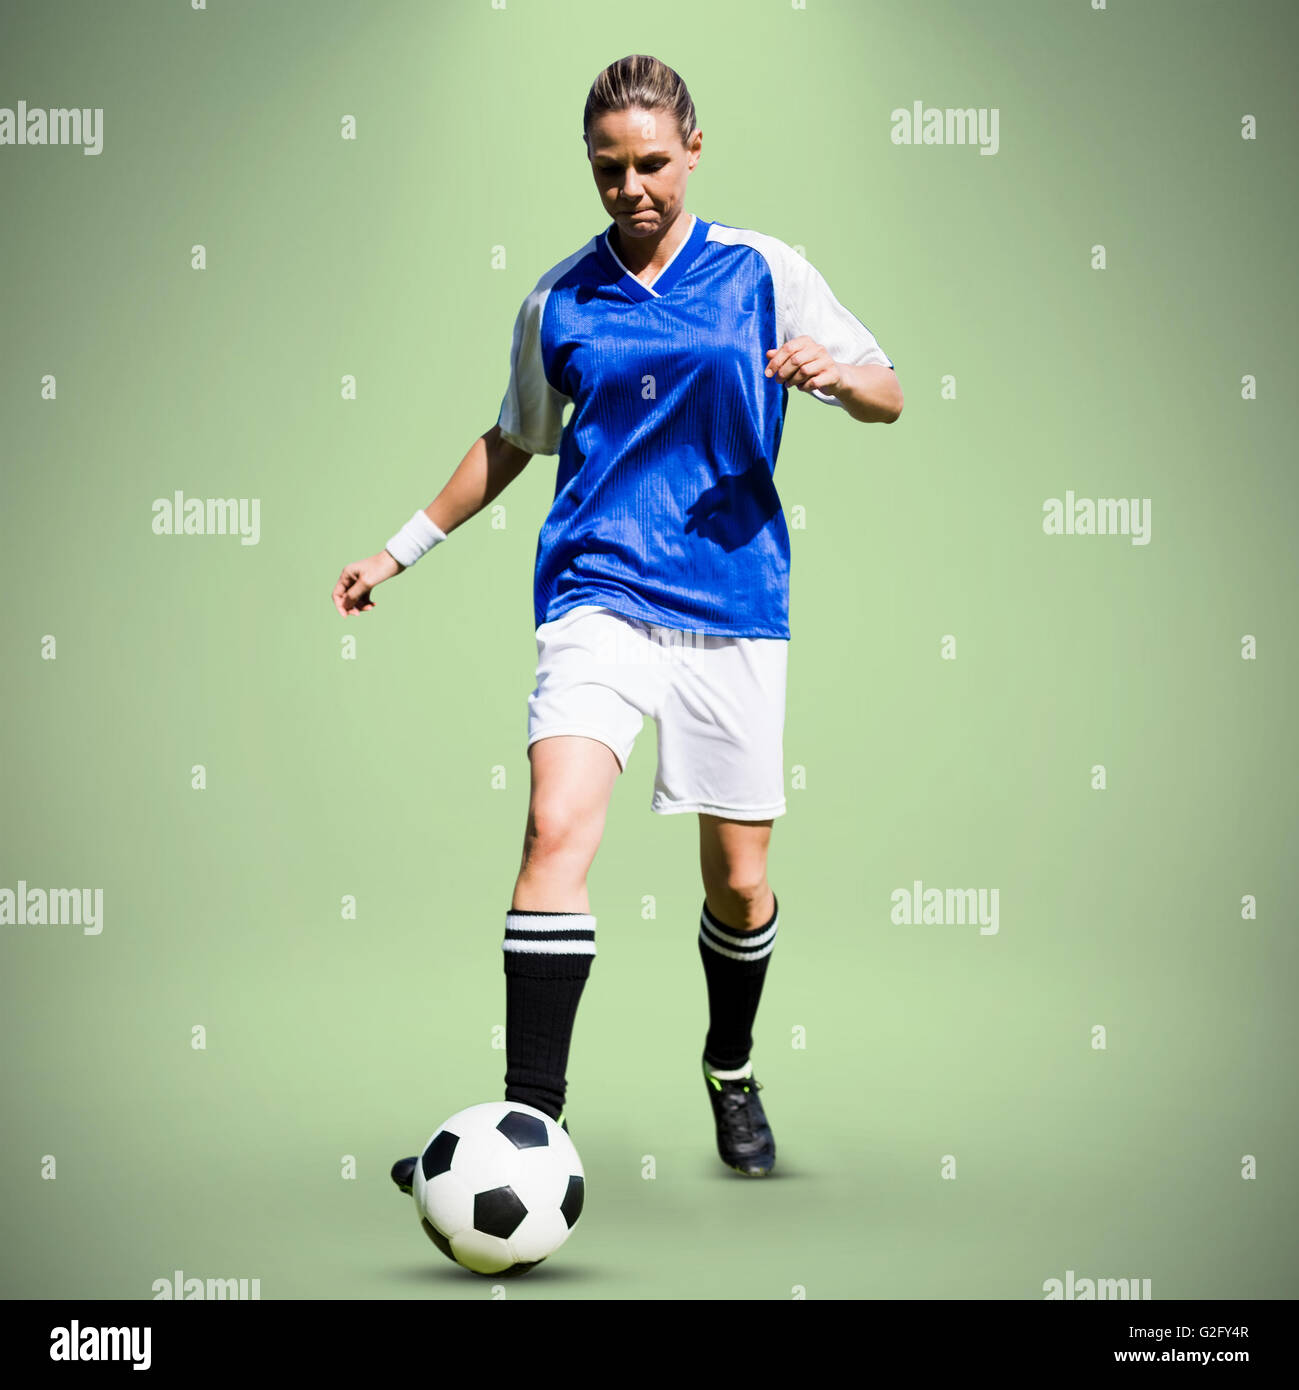 Immagine composita della donna giocatore di calcio procedendo con una sfera Foto Stock